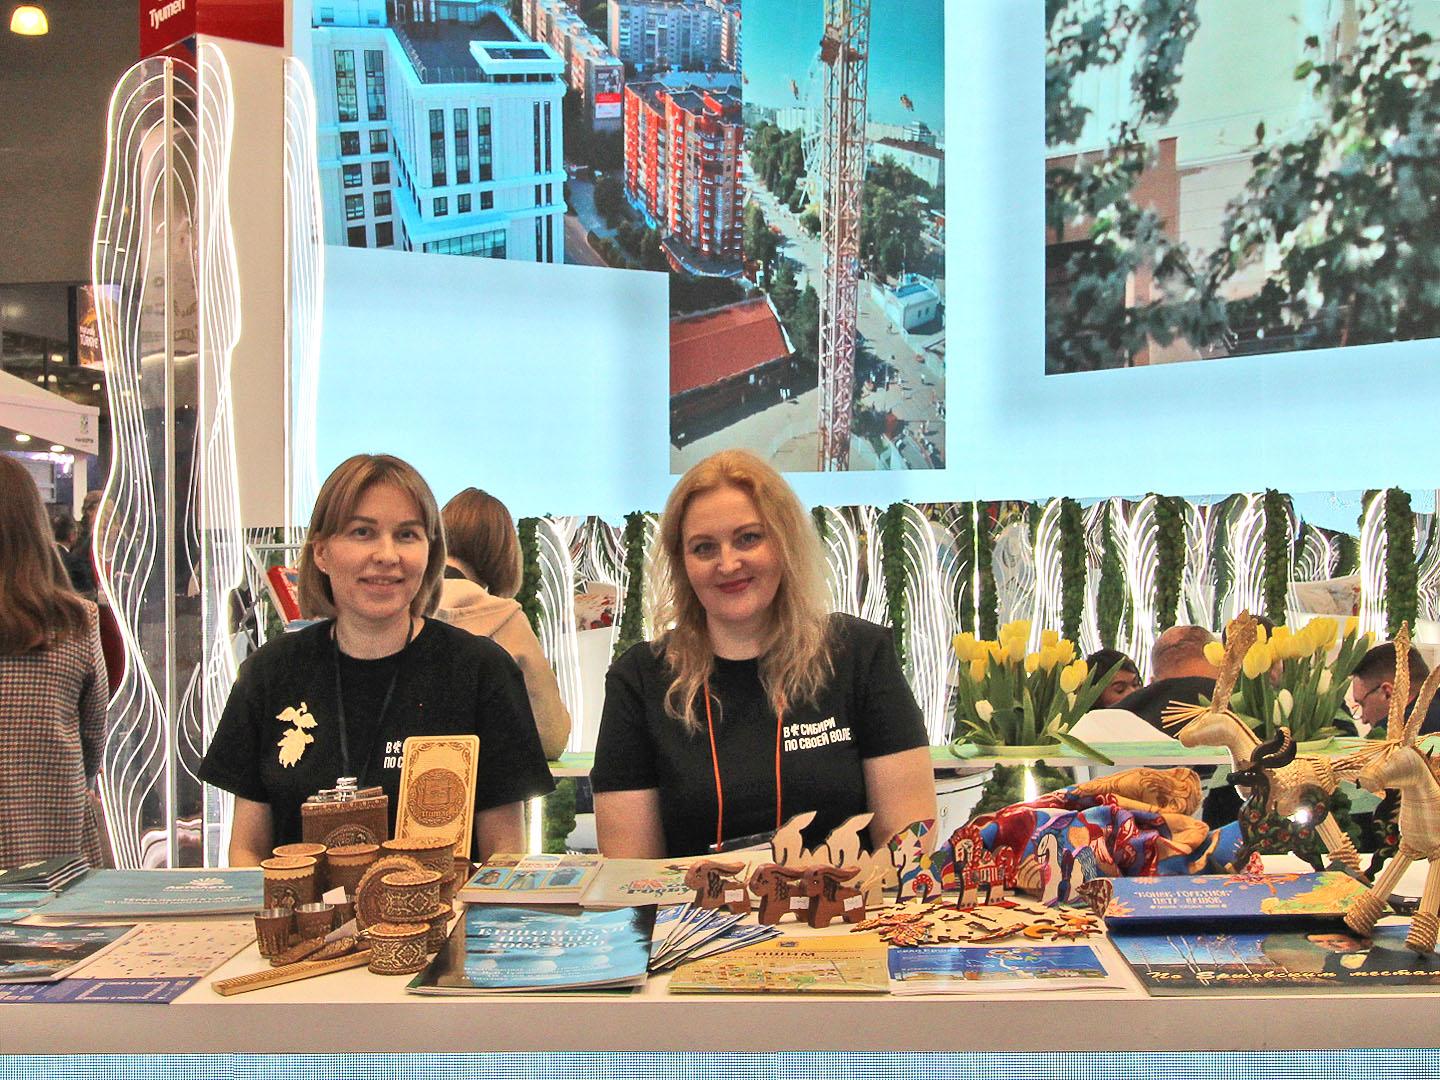 Московская международная выставка туризма MITT